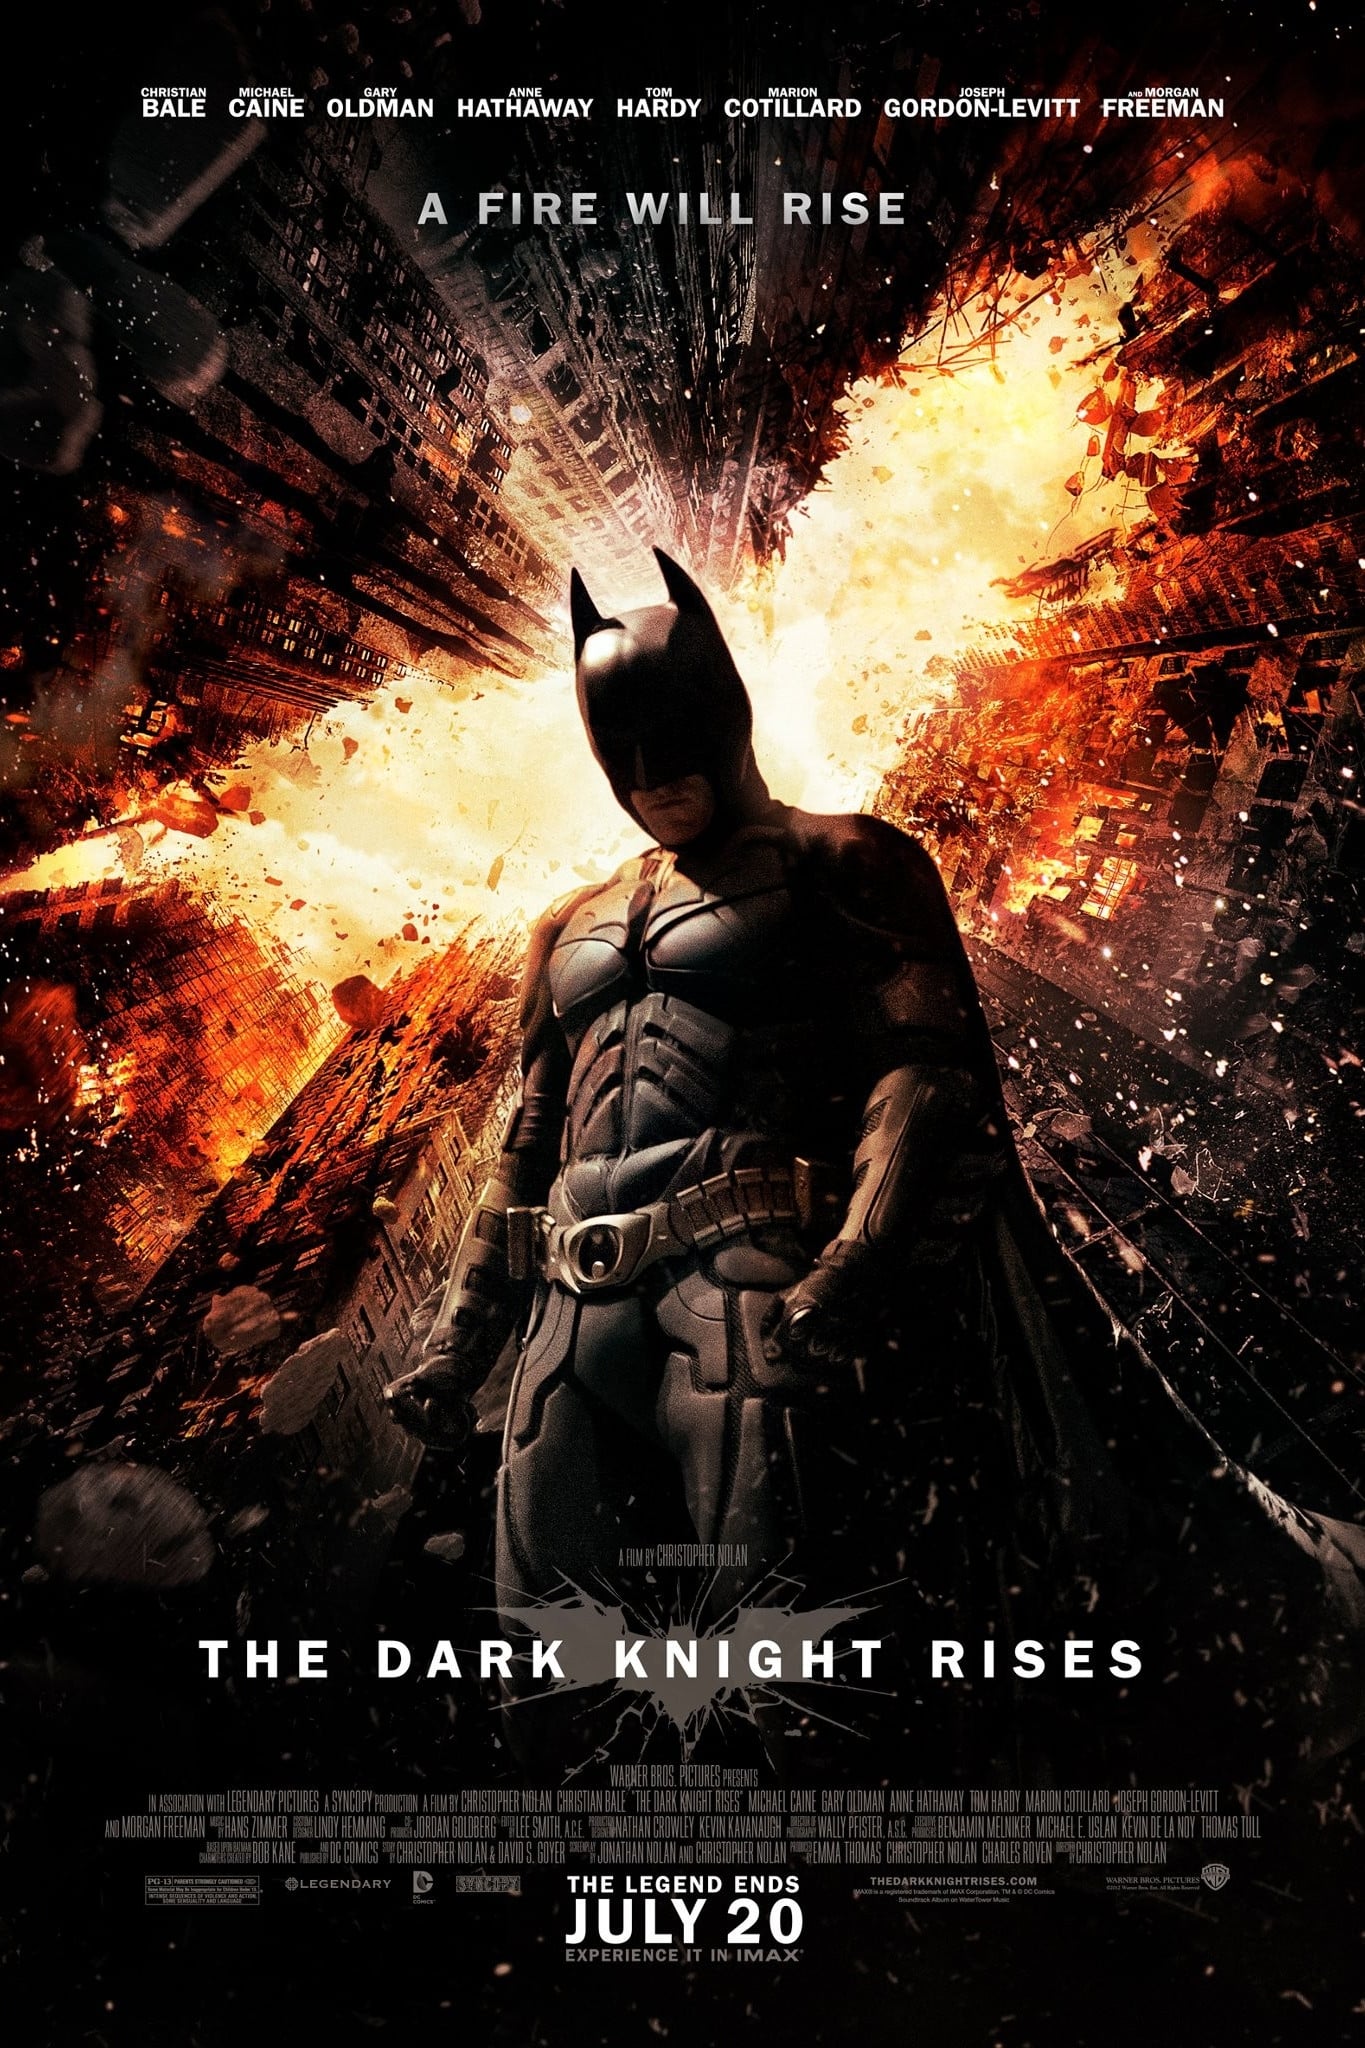 EN - The Dark Knight Rises (2012) Batman